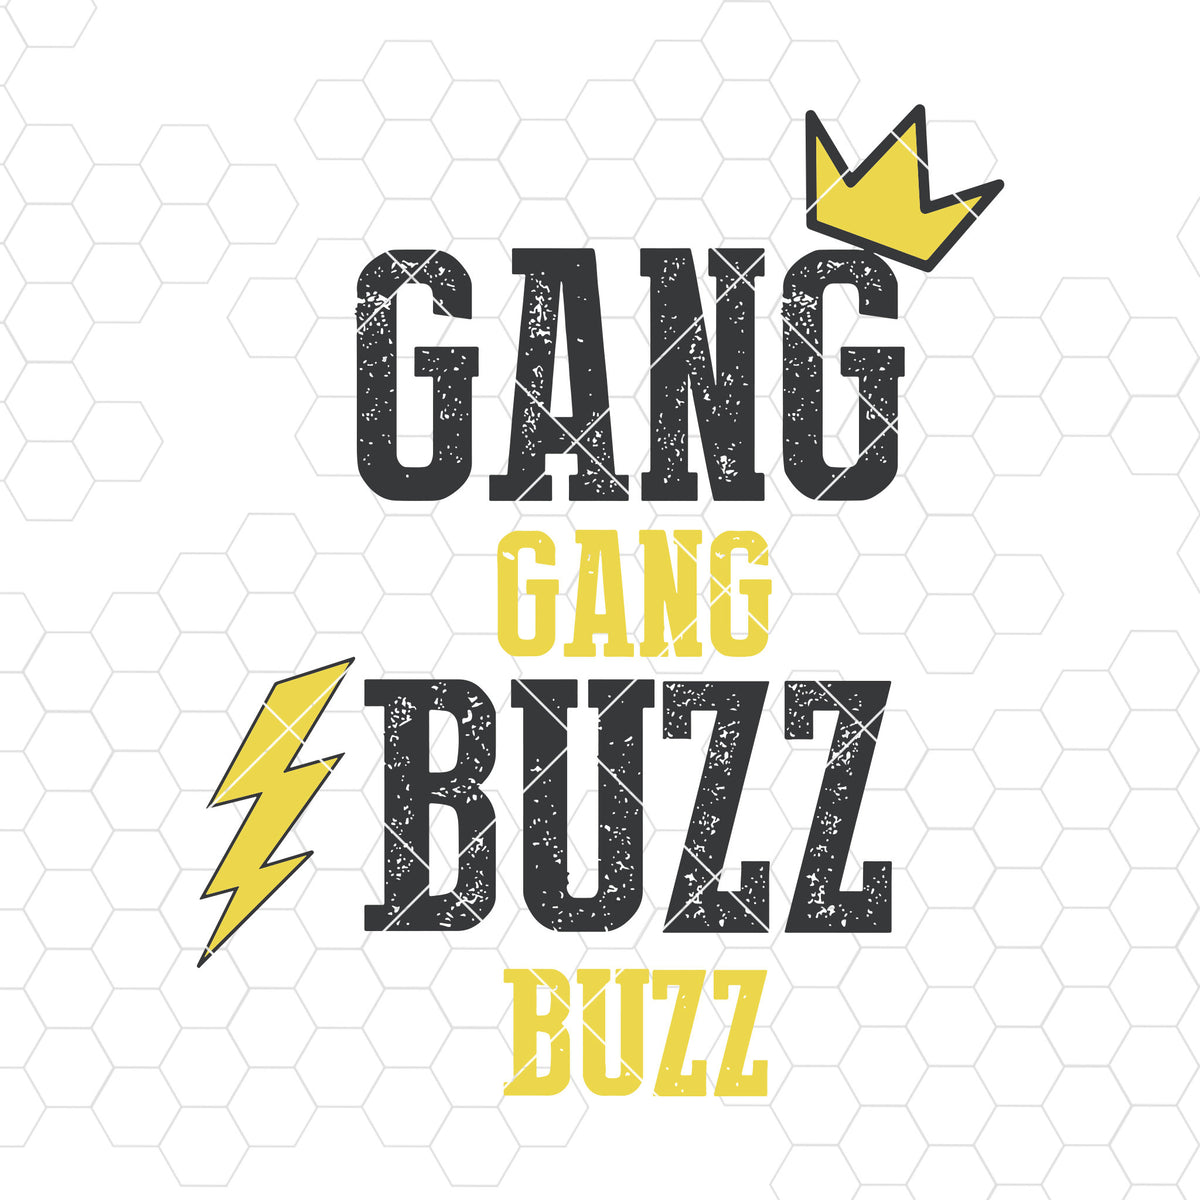 Download Gang Gang Buzz Buzz Digital Cut Files Svg, Dxf, Eps, Png, Cricut Vecto - DoranStars